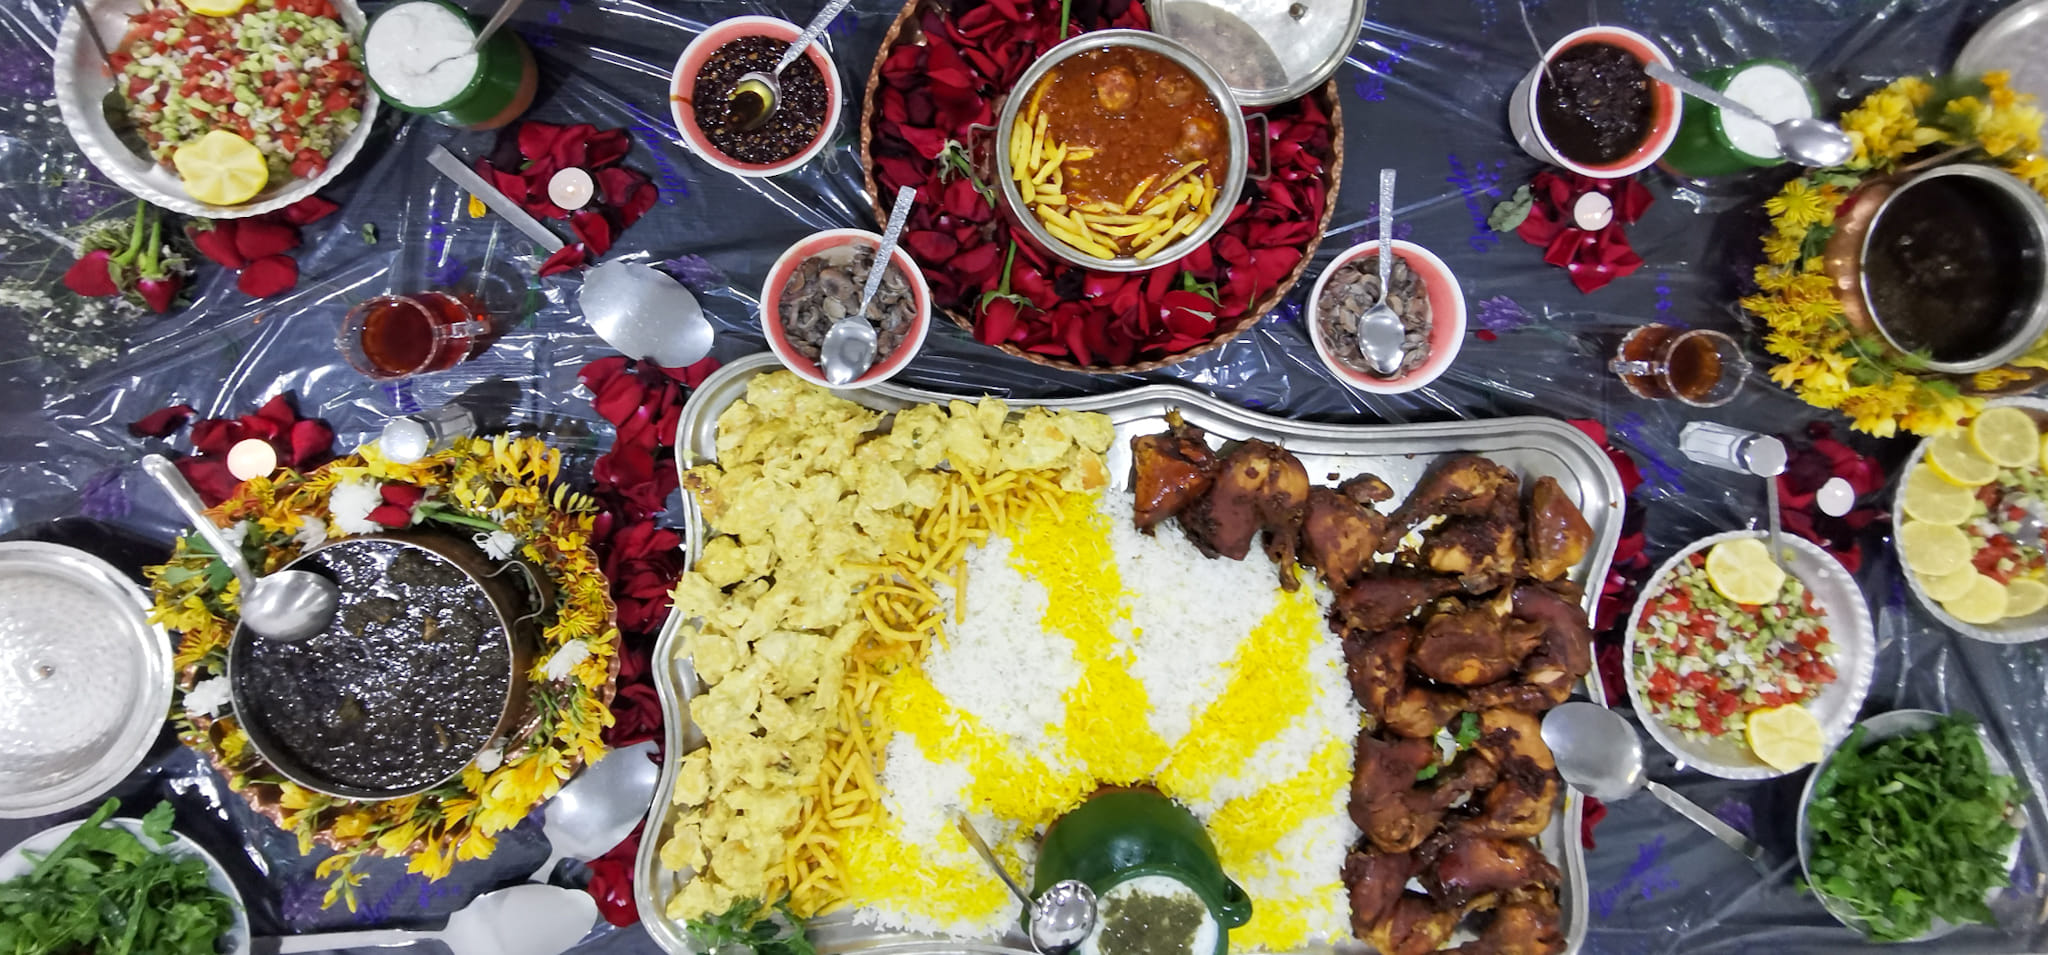 Die raffinierte, iranische Küche kennt viele Gewürzarten und eine Vielzahl von für Europäer exotischen Gerichten, die extrem lecker sind.